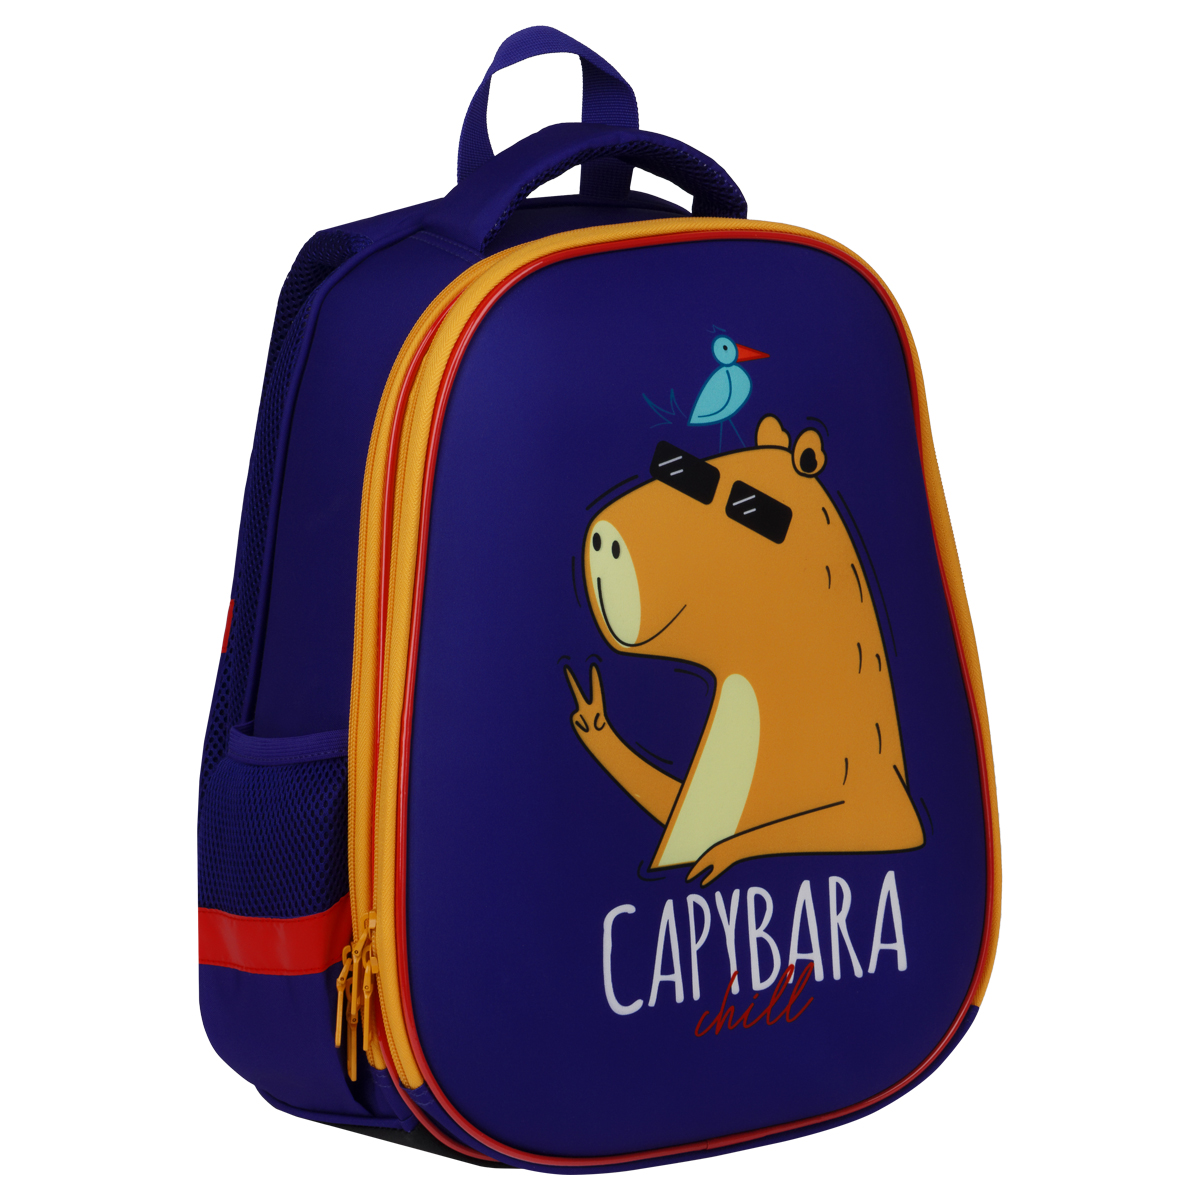 Ранец ArtSpace School Friend "Capybara" 39*30*18см, 2 отделения, 2 кармана, анатомическая спинка